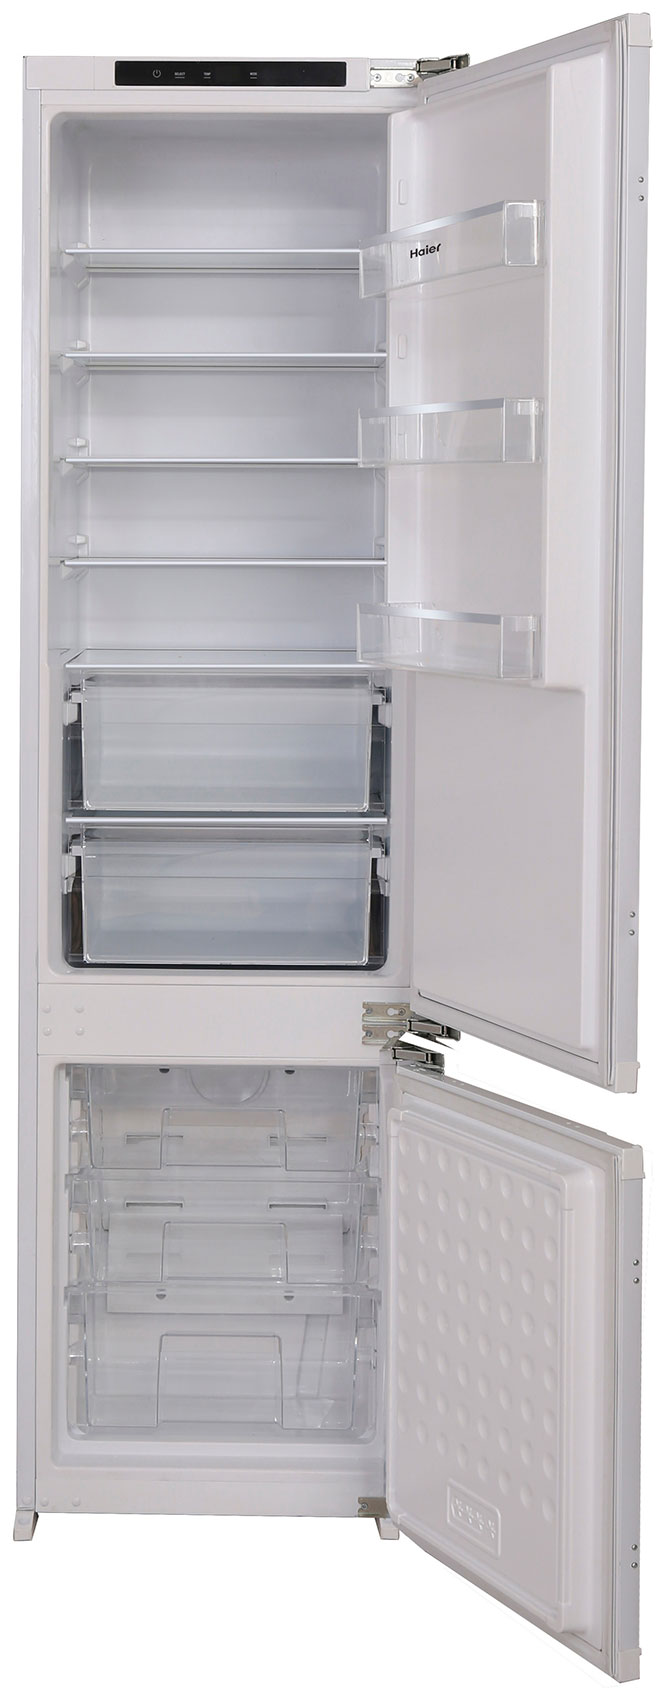 Встраиваемый двухкамерный холодильник Ascoli ADRF305WEBI встраиваемый двухкамерный холодильник kuppersberg nbm 17863